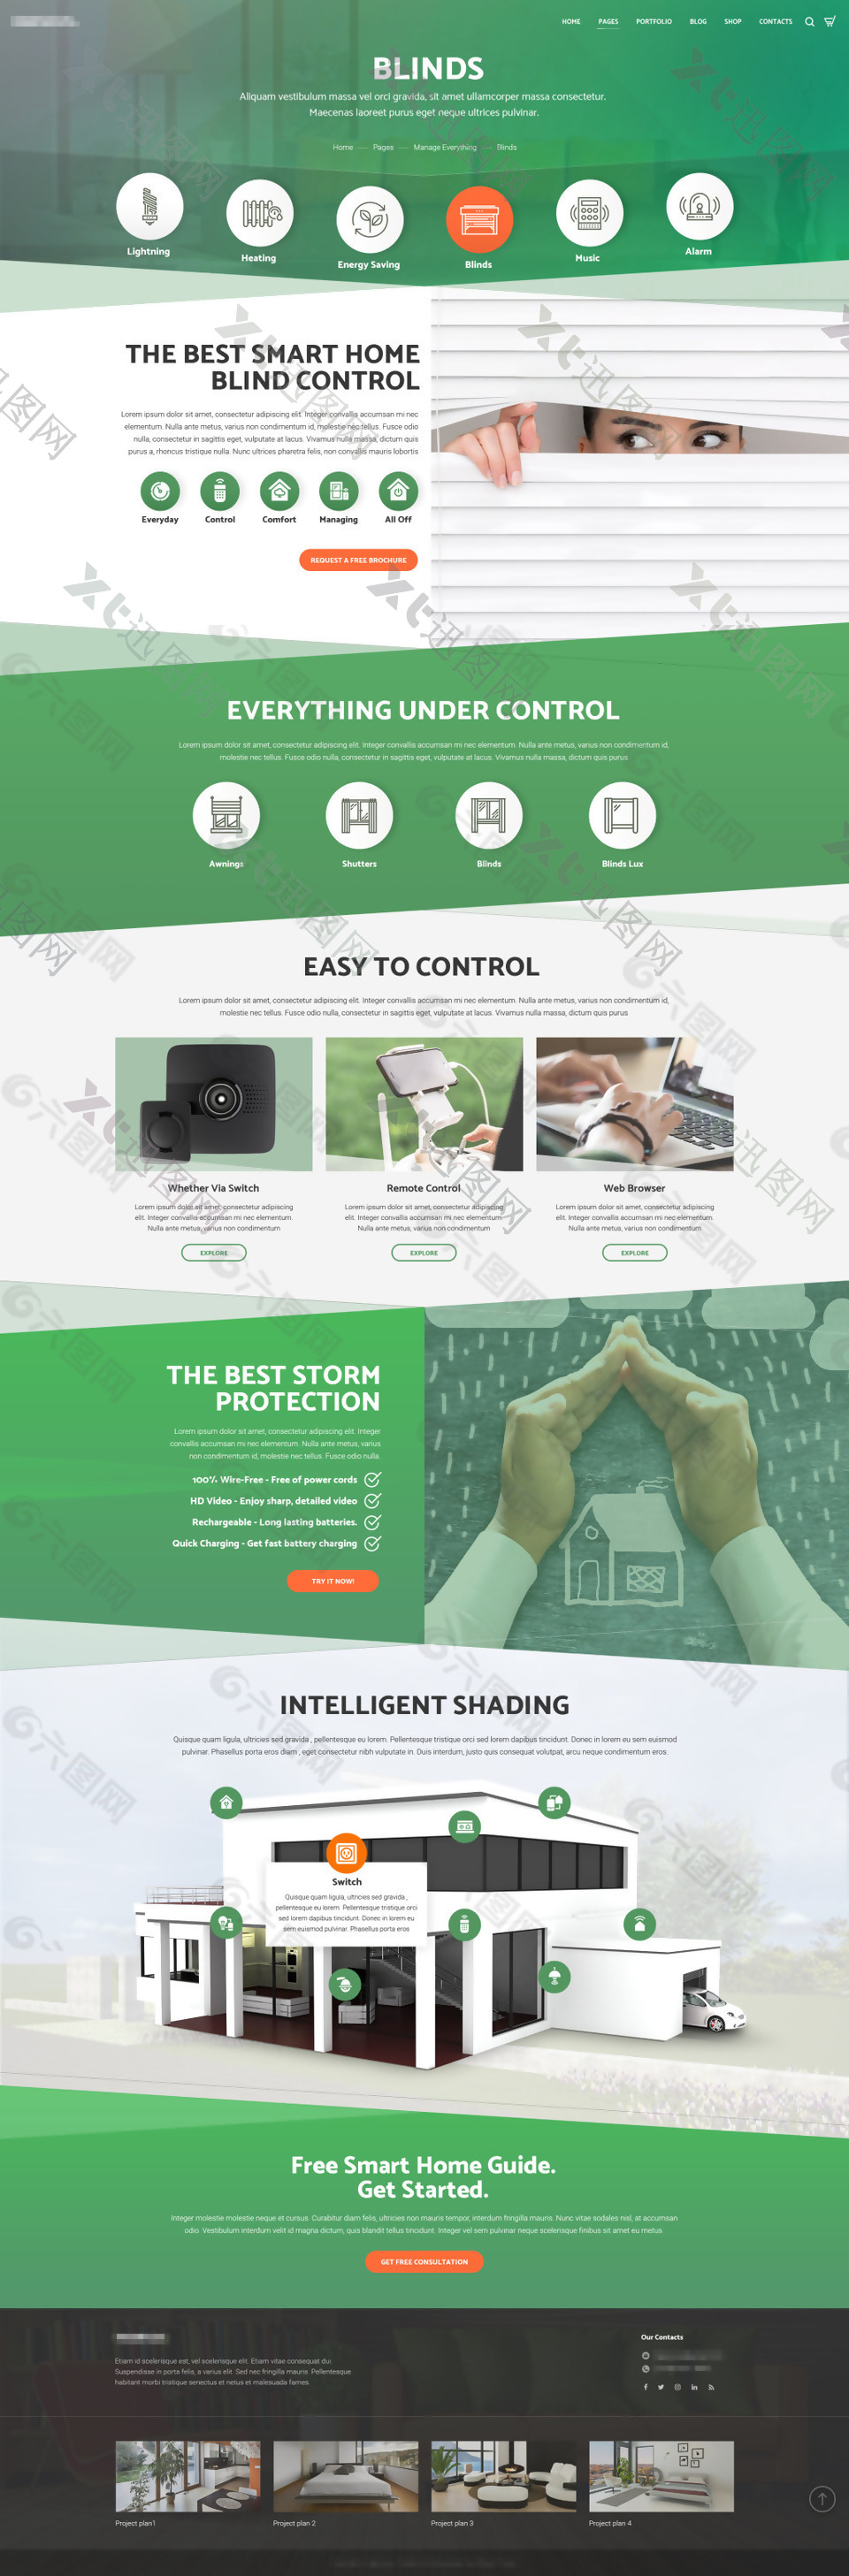 绿色的企业安防监控设备摄像头介绍